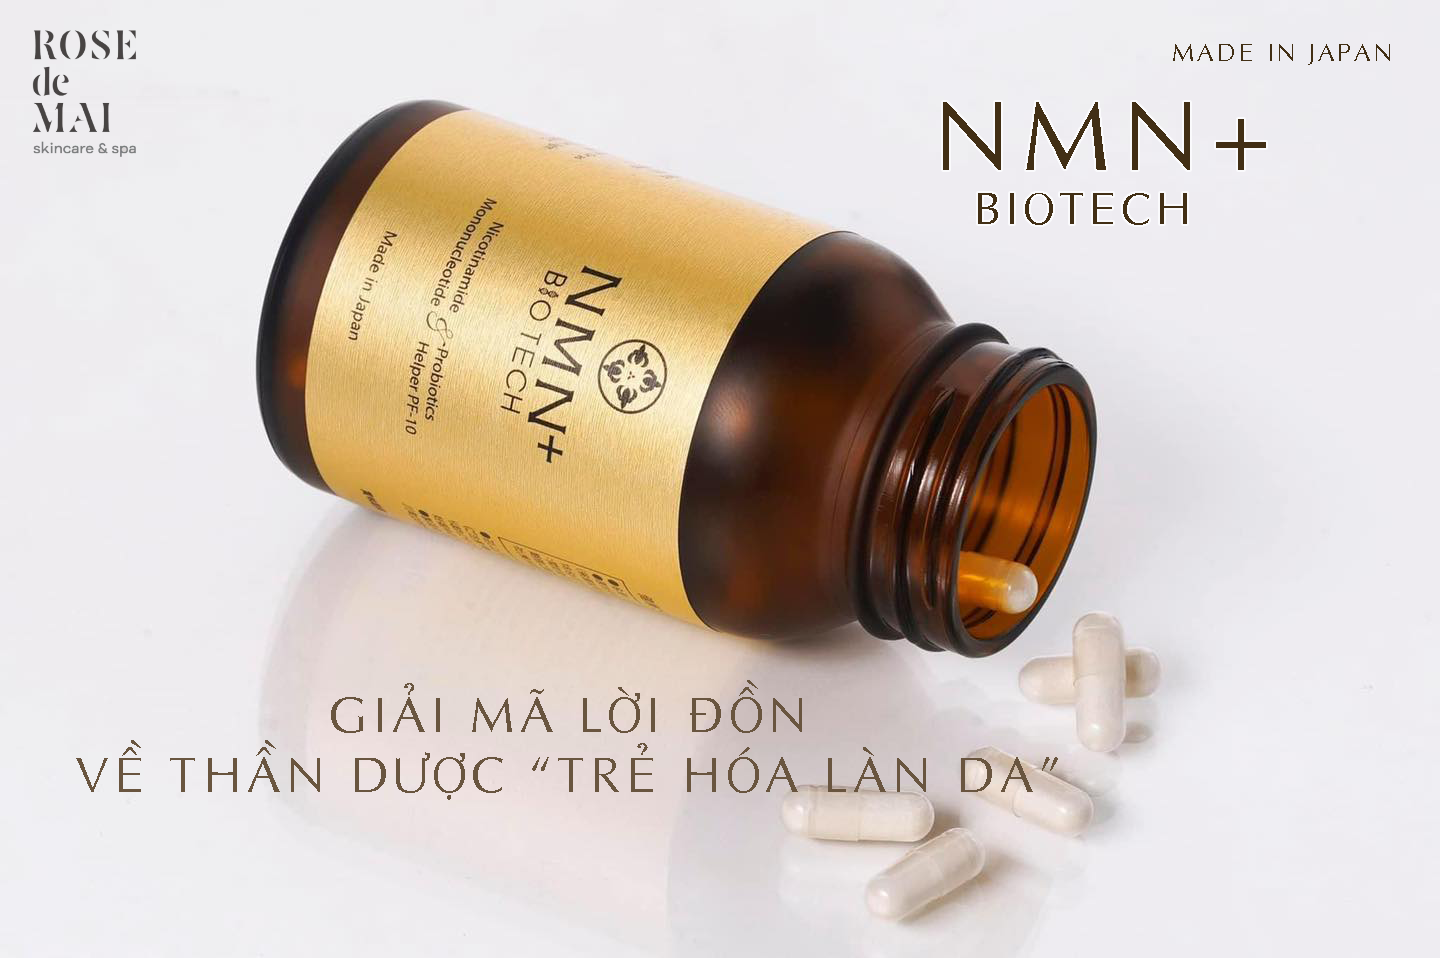 NMN+ Biotech